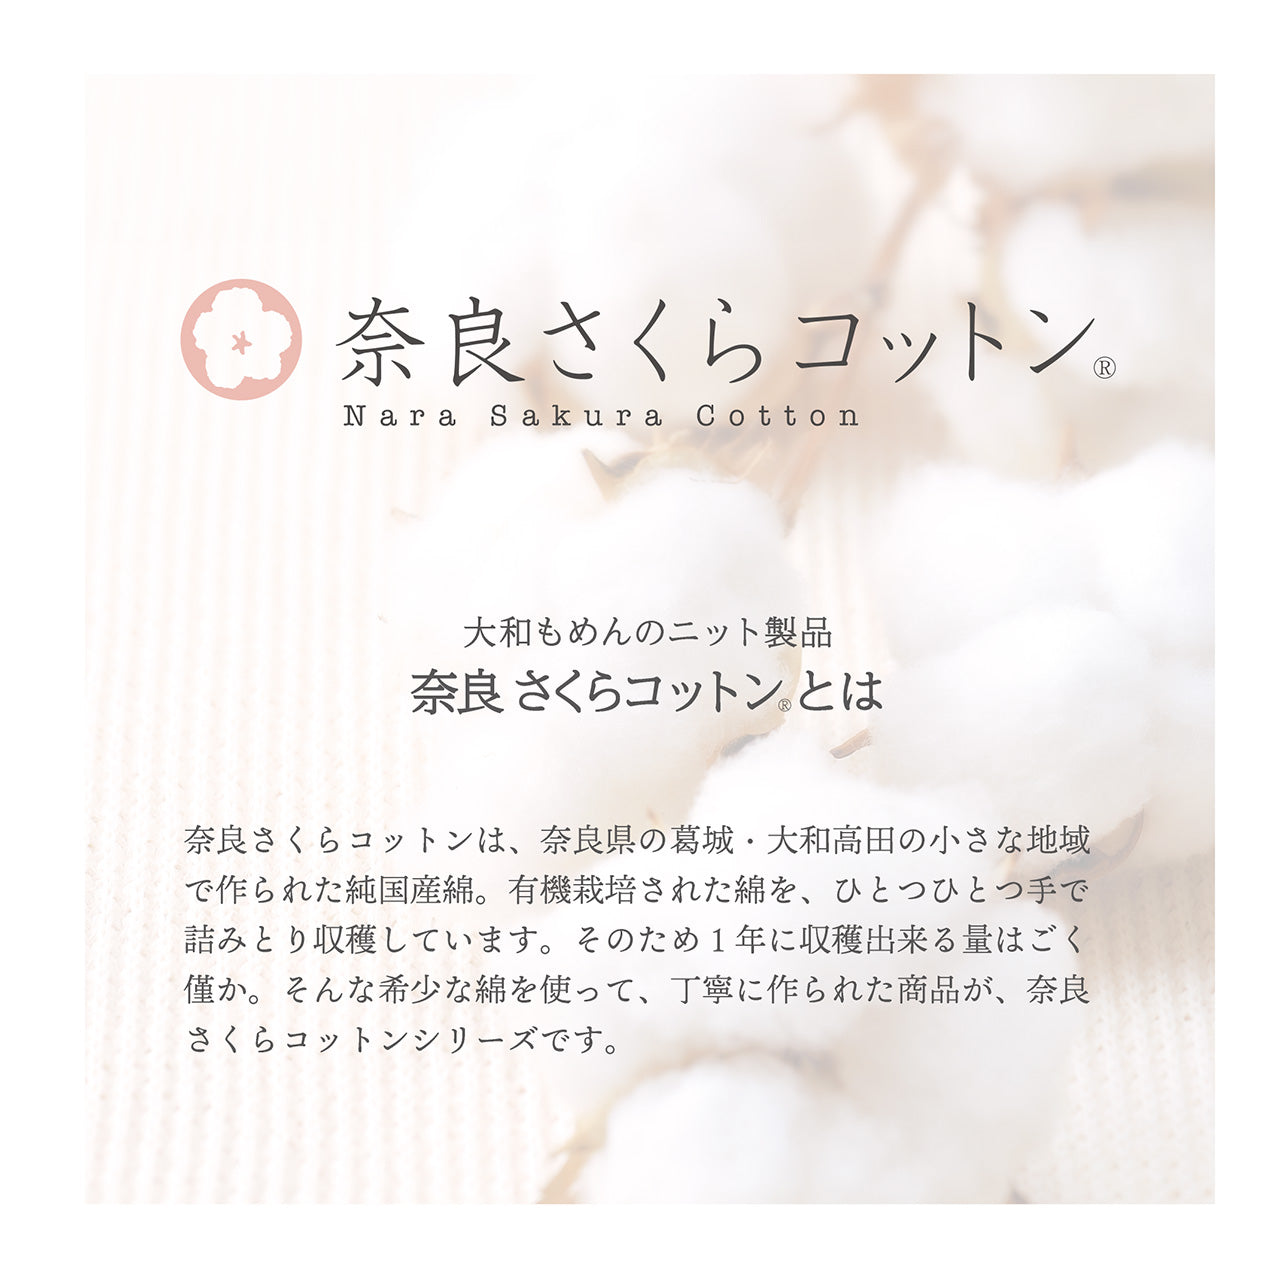 【純国産綿】奈良さくらコットンベビーワンピース